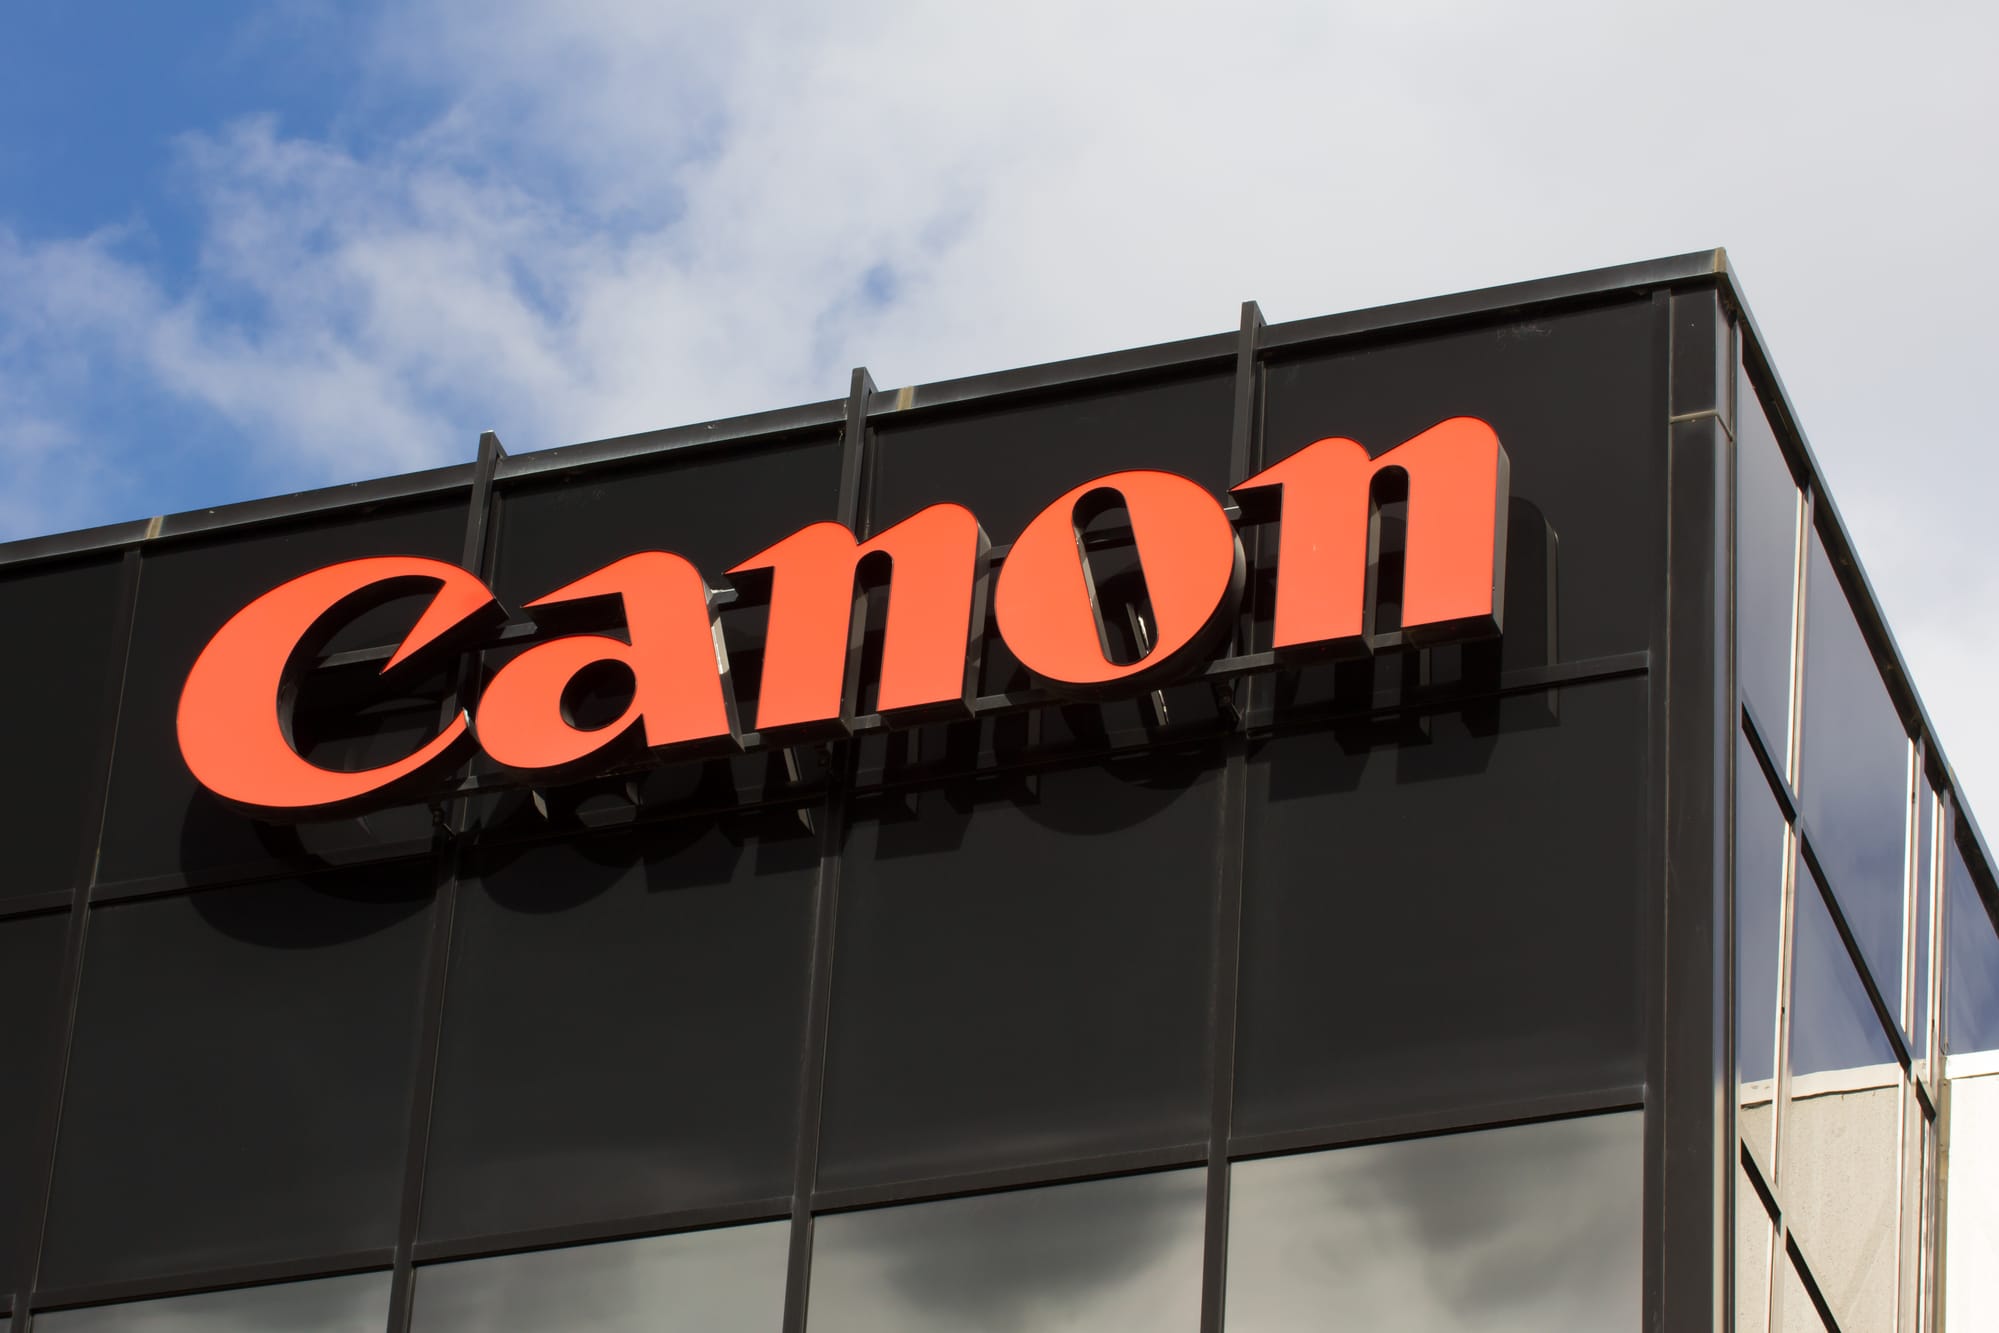 Canon annuncia il suo supporto alla nuova edizione di Visa pour l'Image thumbnail